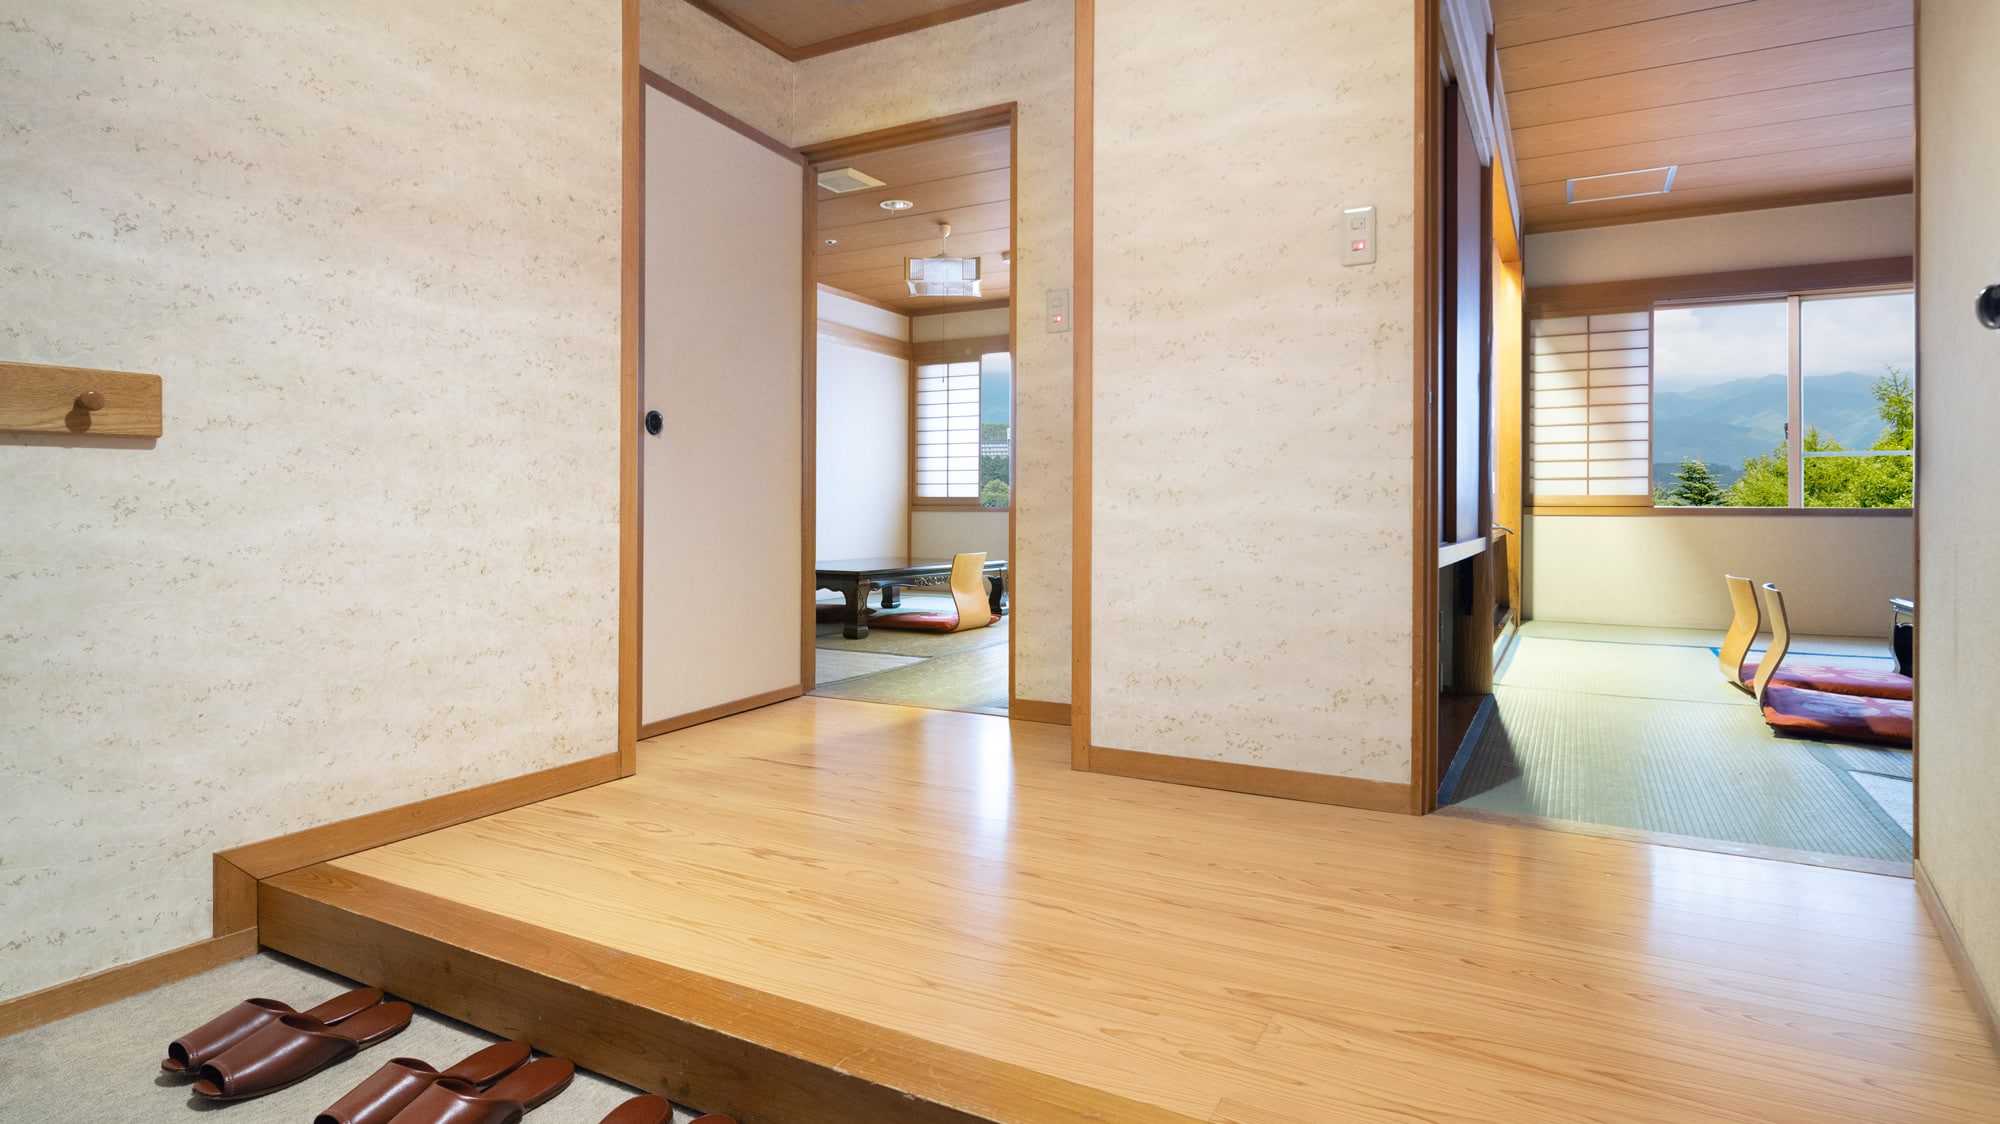 【日式房間10張榻榻米+8張榻榻米】房間有兩個獨立的日式房間